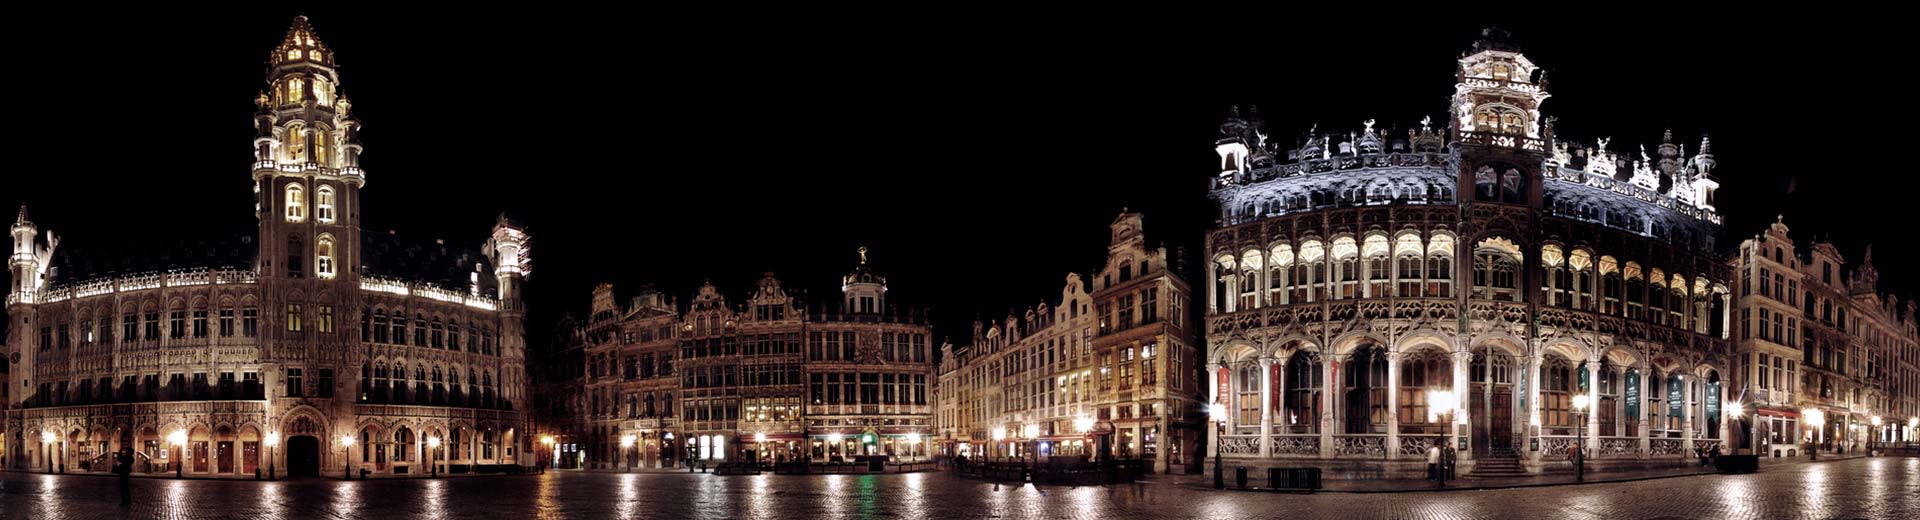 Das Brüssel -Stadtzentrum nachts mit dem Rathaus im Blick.